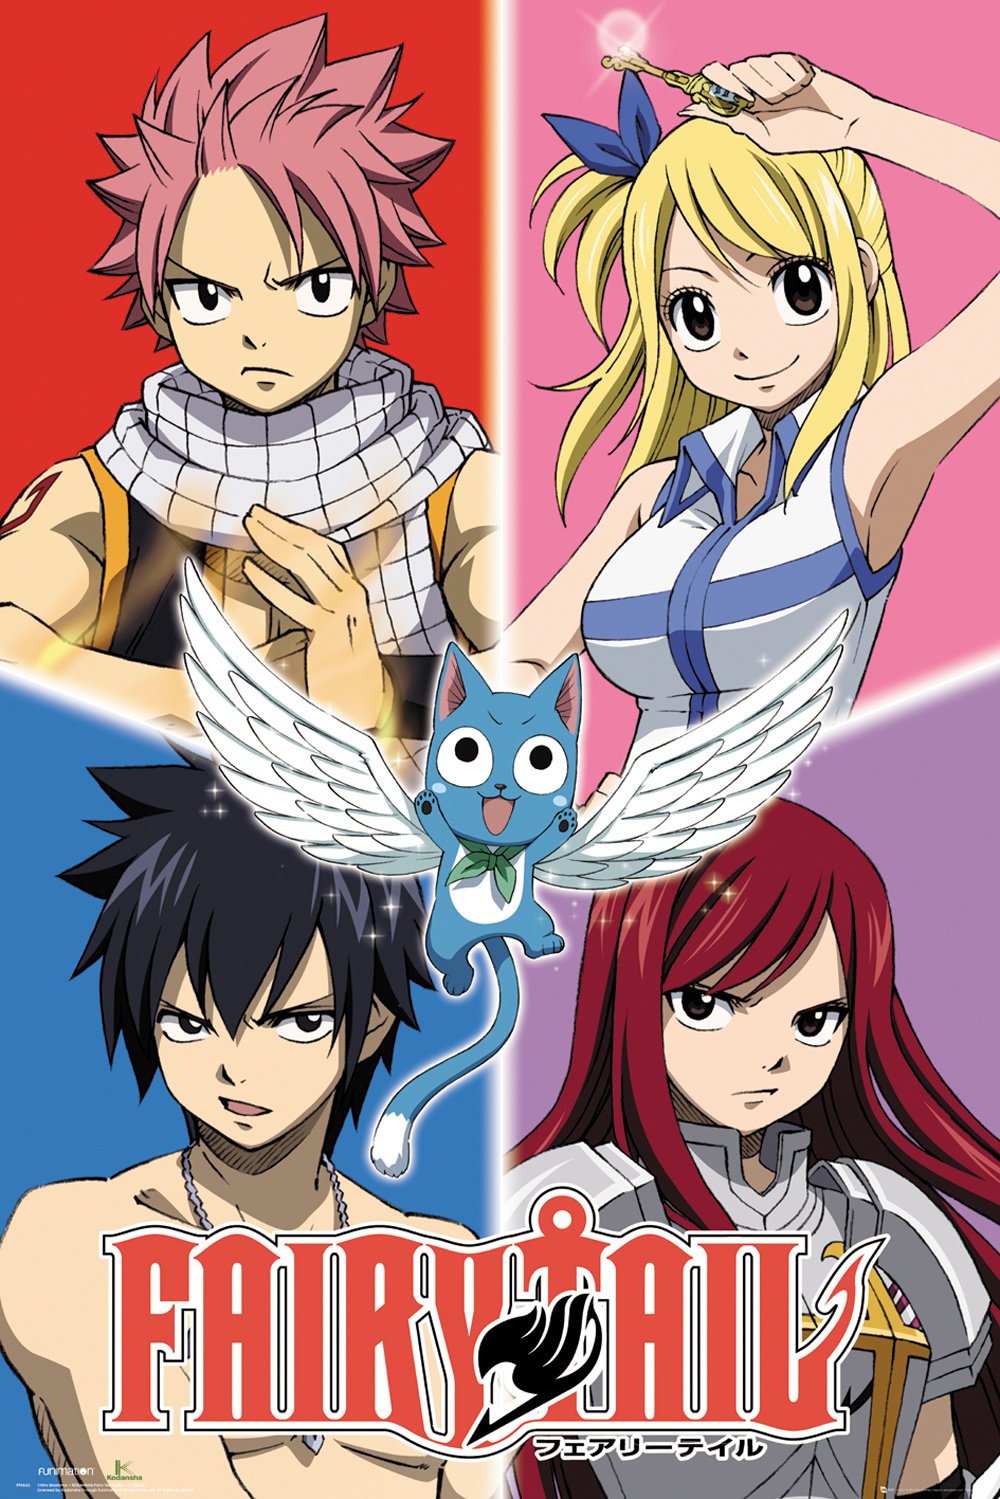 Mua anime posters hàng hiệu chính hãng từ Mỹ giá tốt. Tháng 9/2023 | Fado.vn